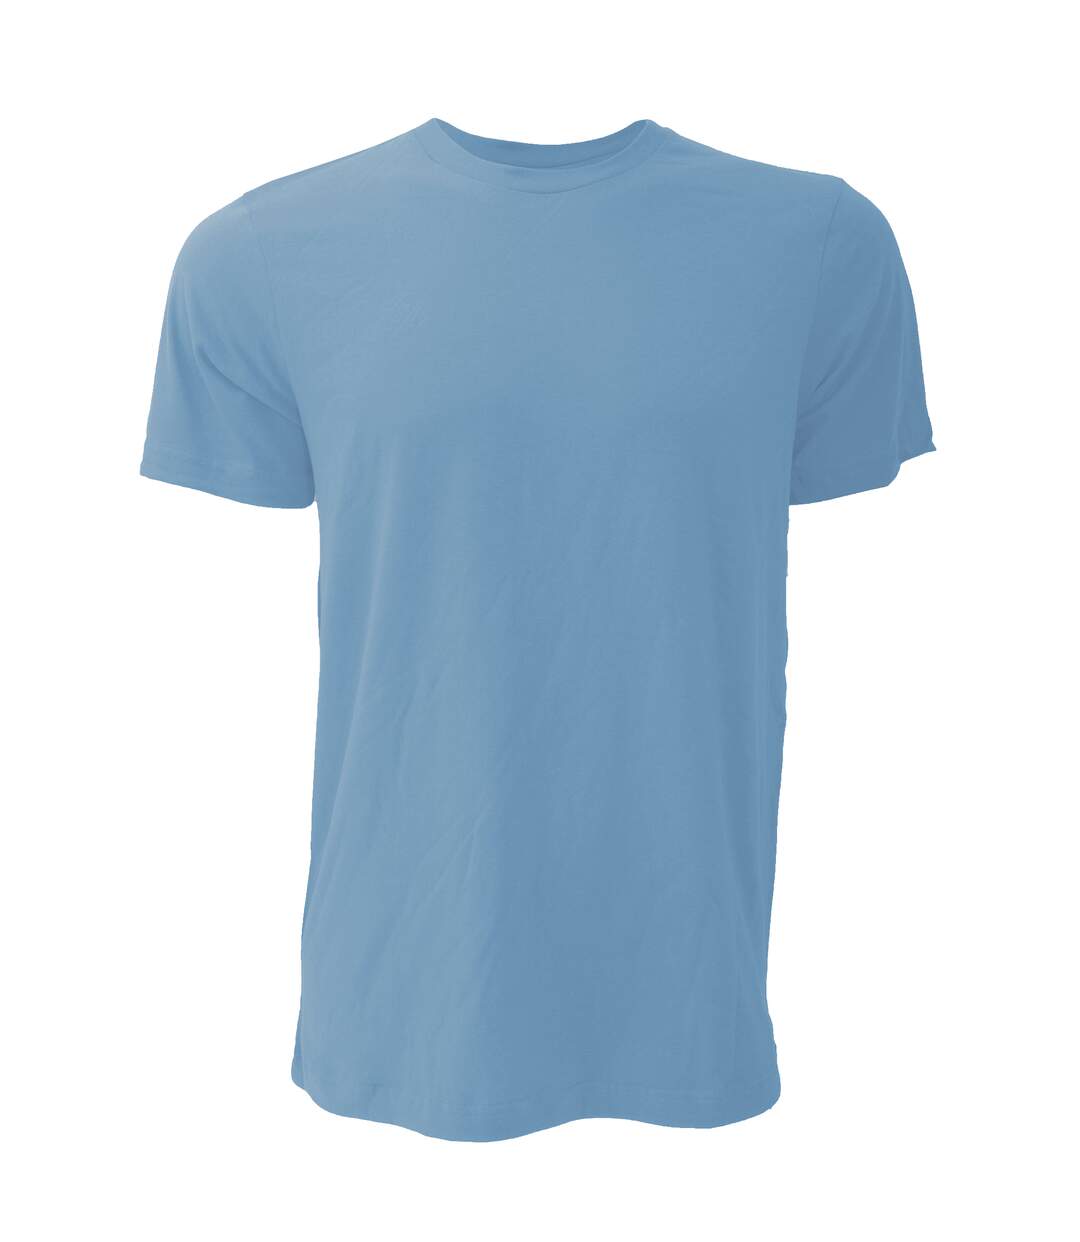 Canvas - T-shirt JERSEY - Hommes (Bleu colombie chiné) - UTBC163